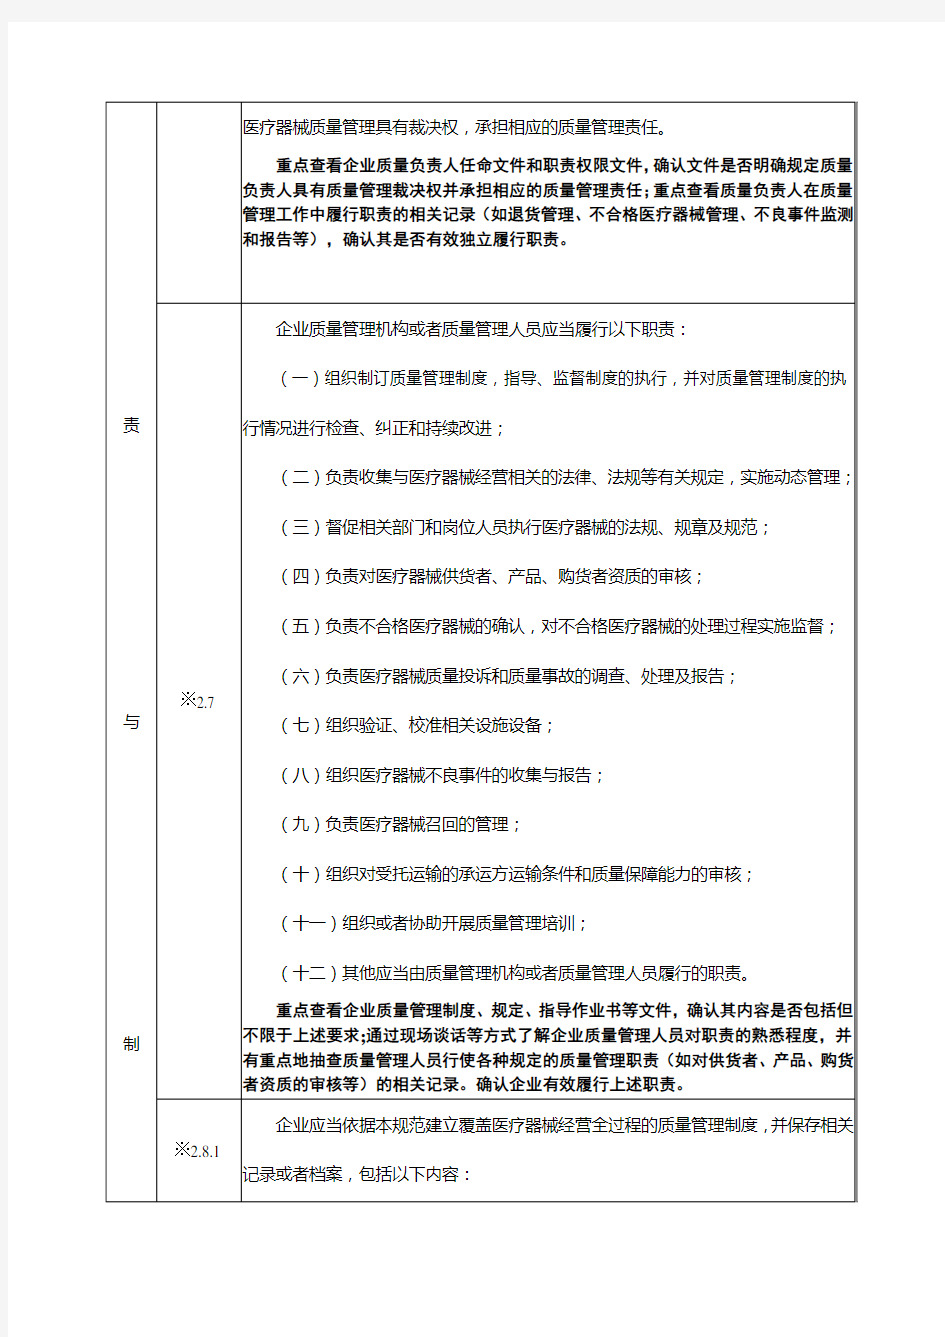 武汉市医疗器械经营企业现场检查评定表